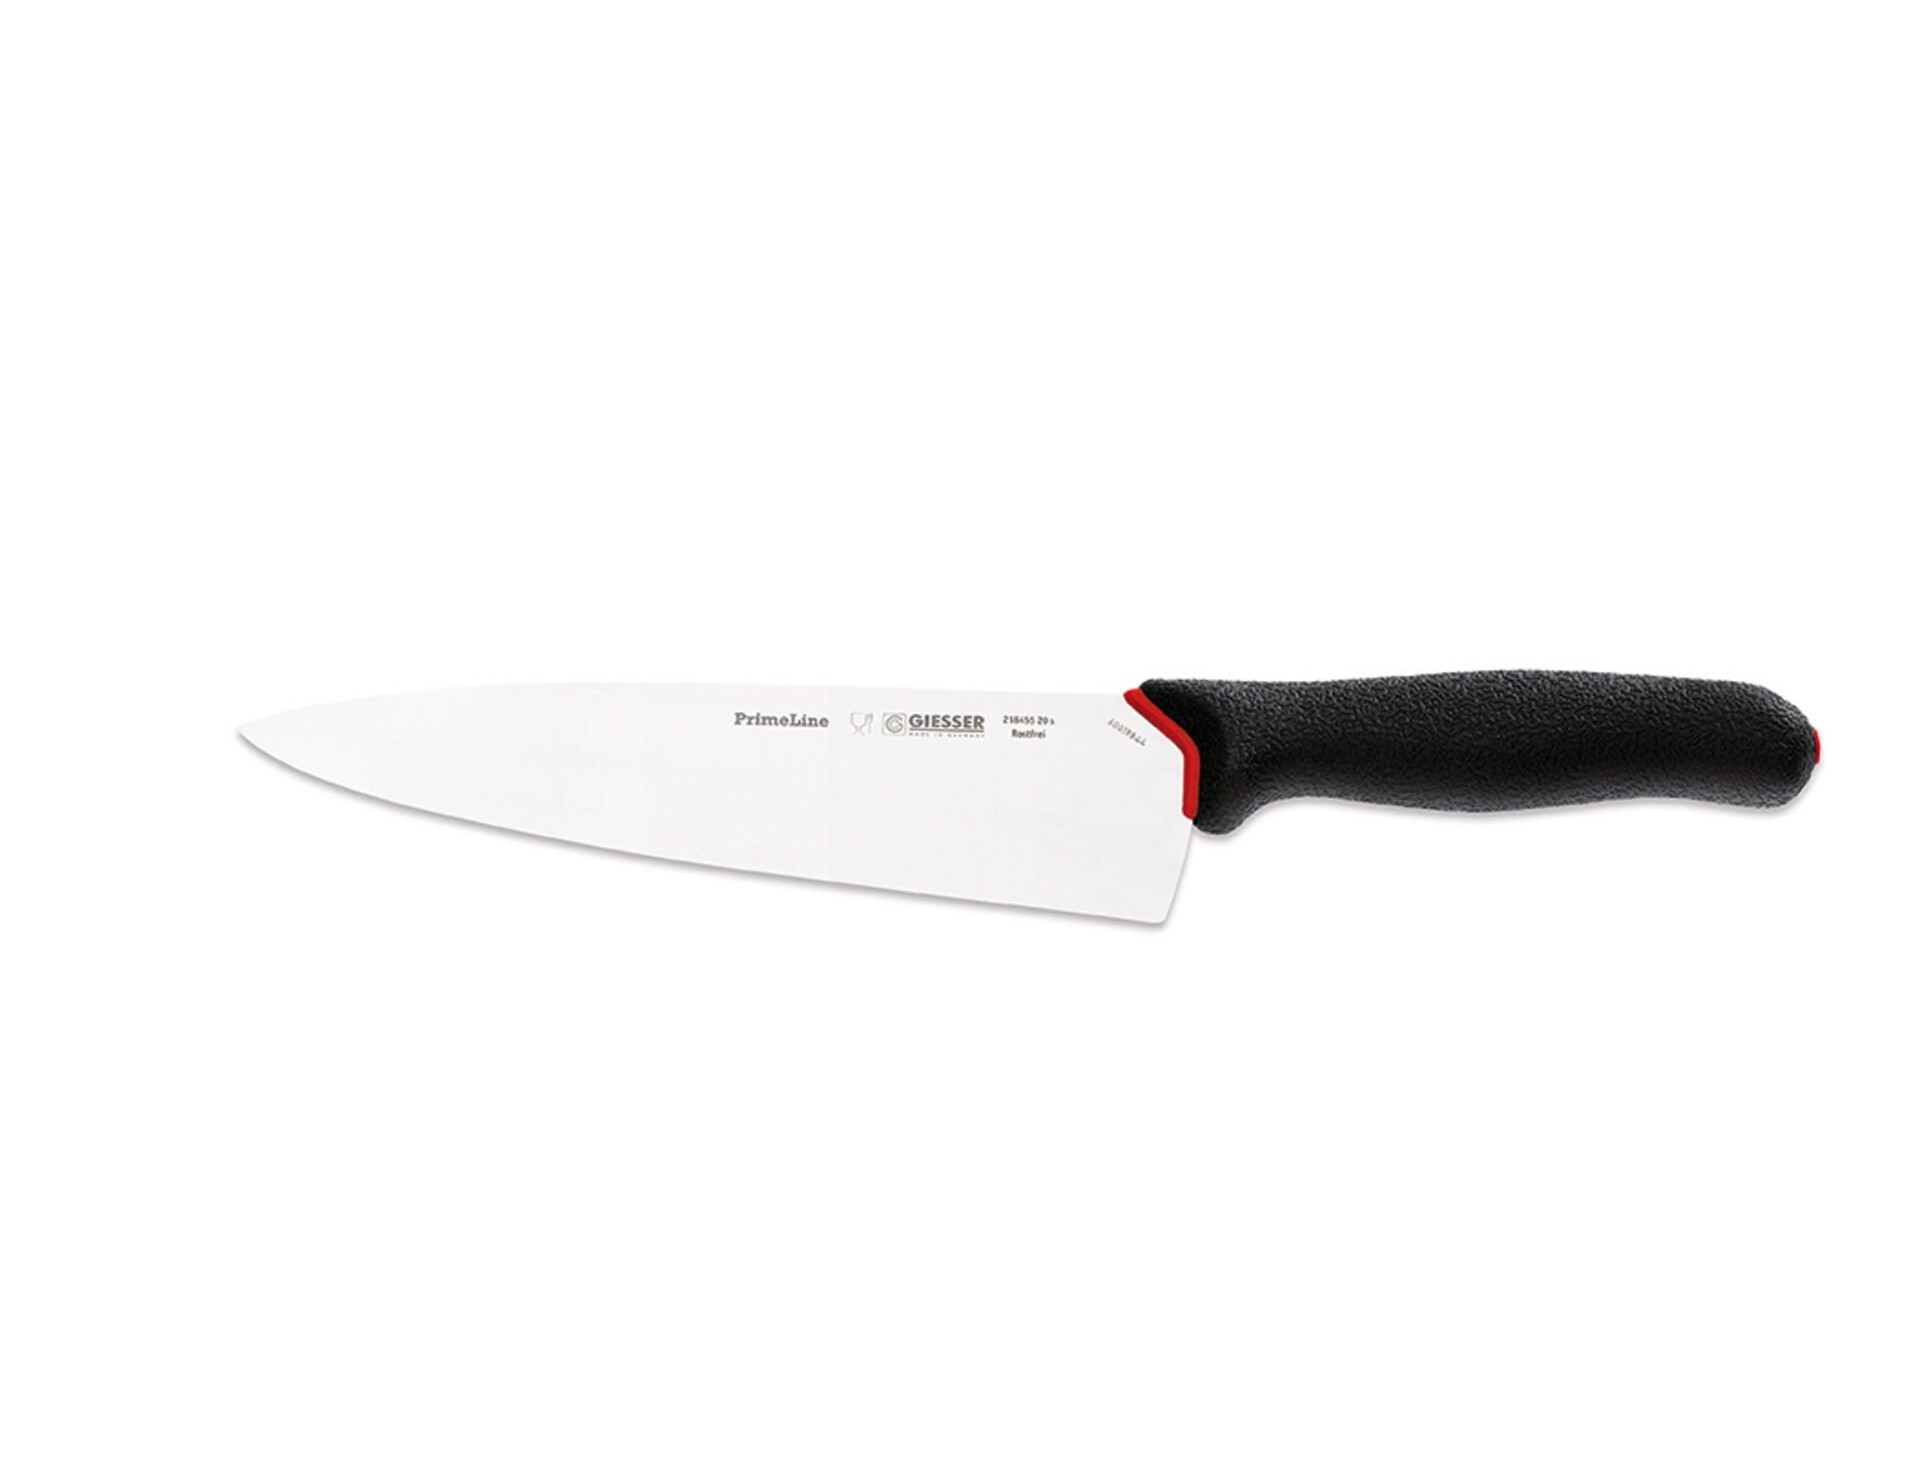  кухонных поварских профессиональных ножей из 5 позиций на .